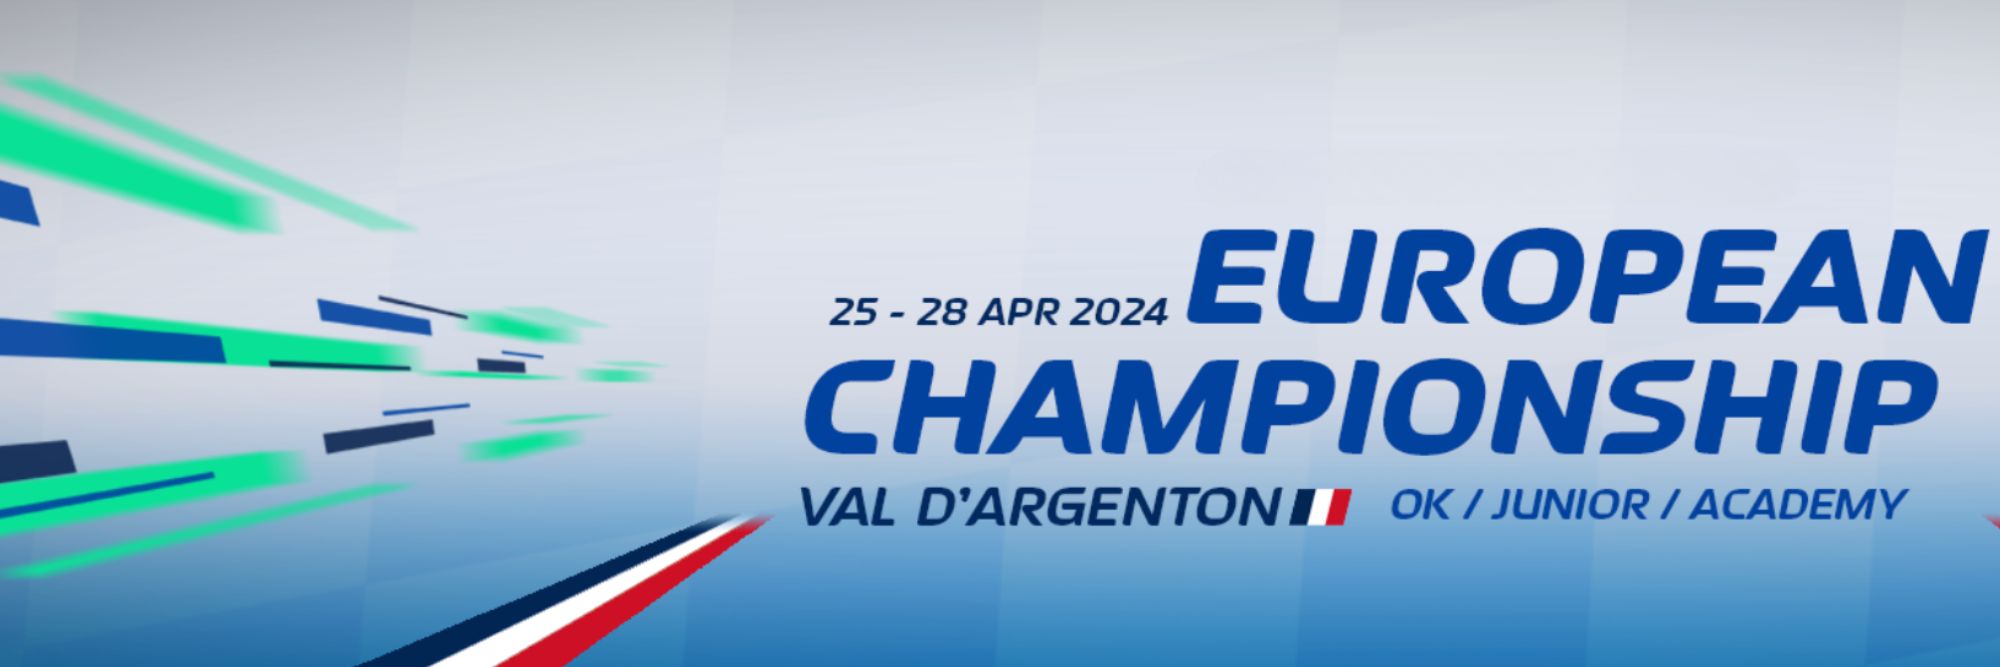 European Championship Round 2